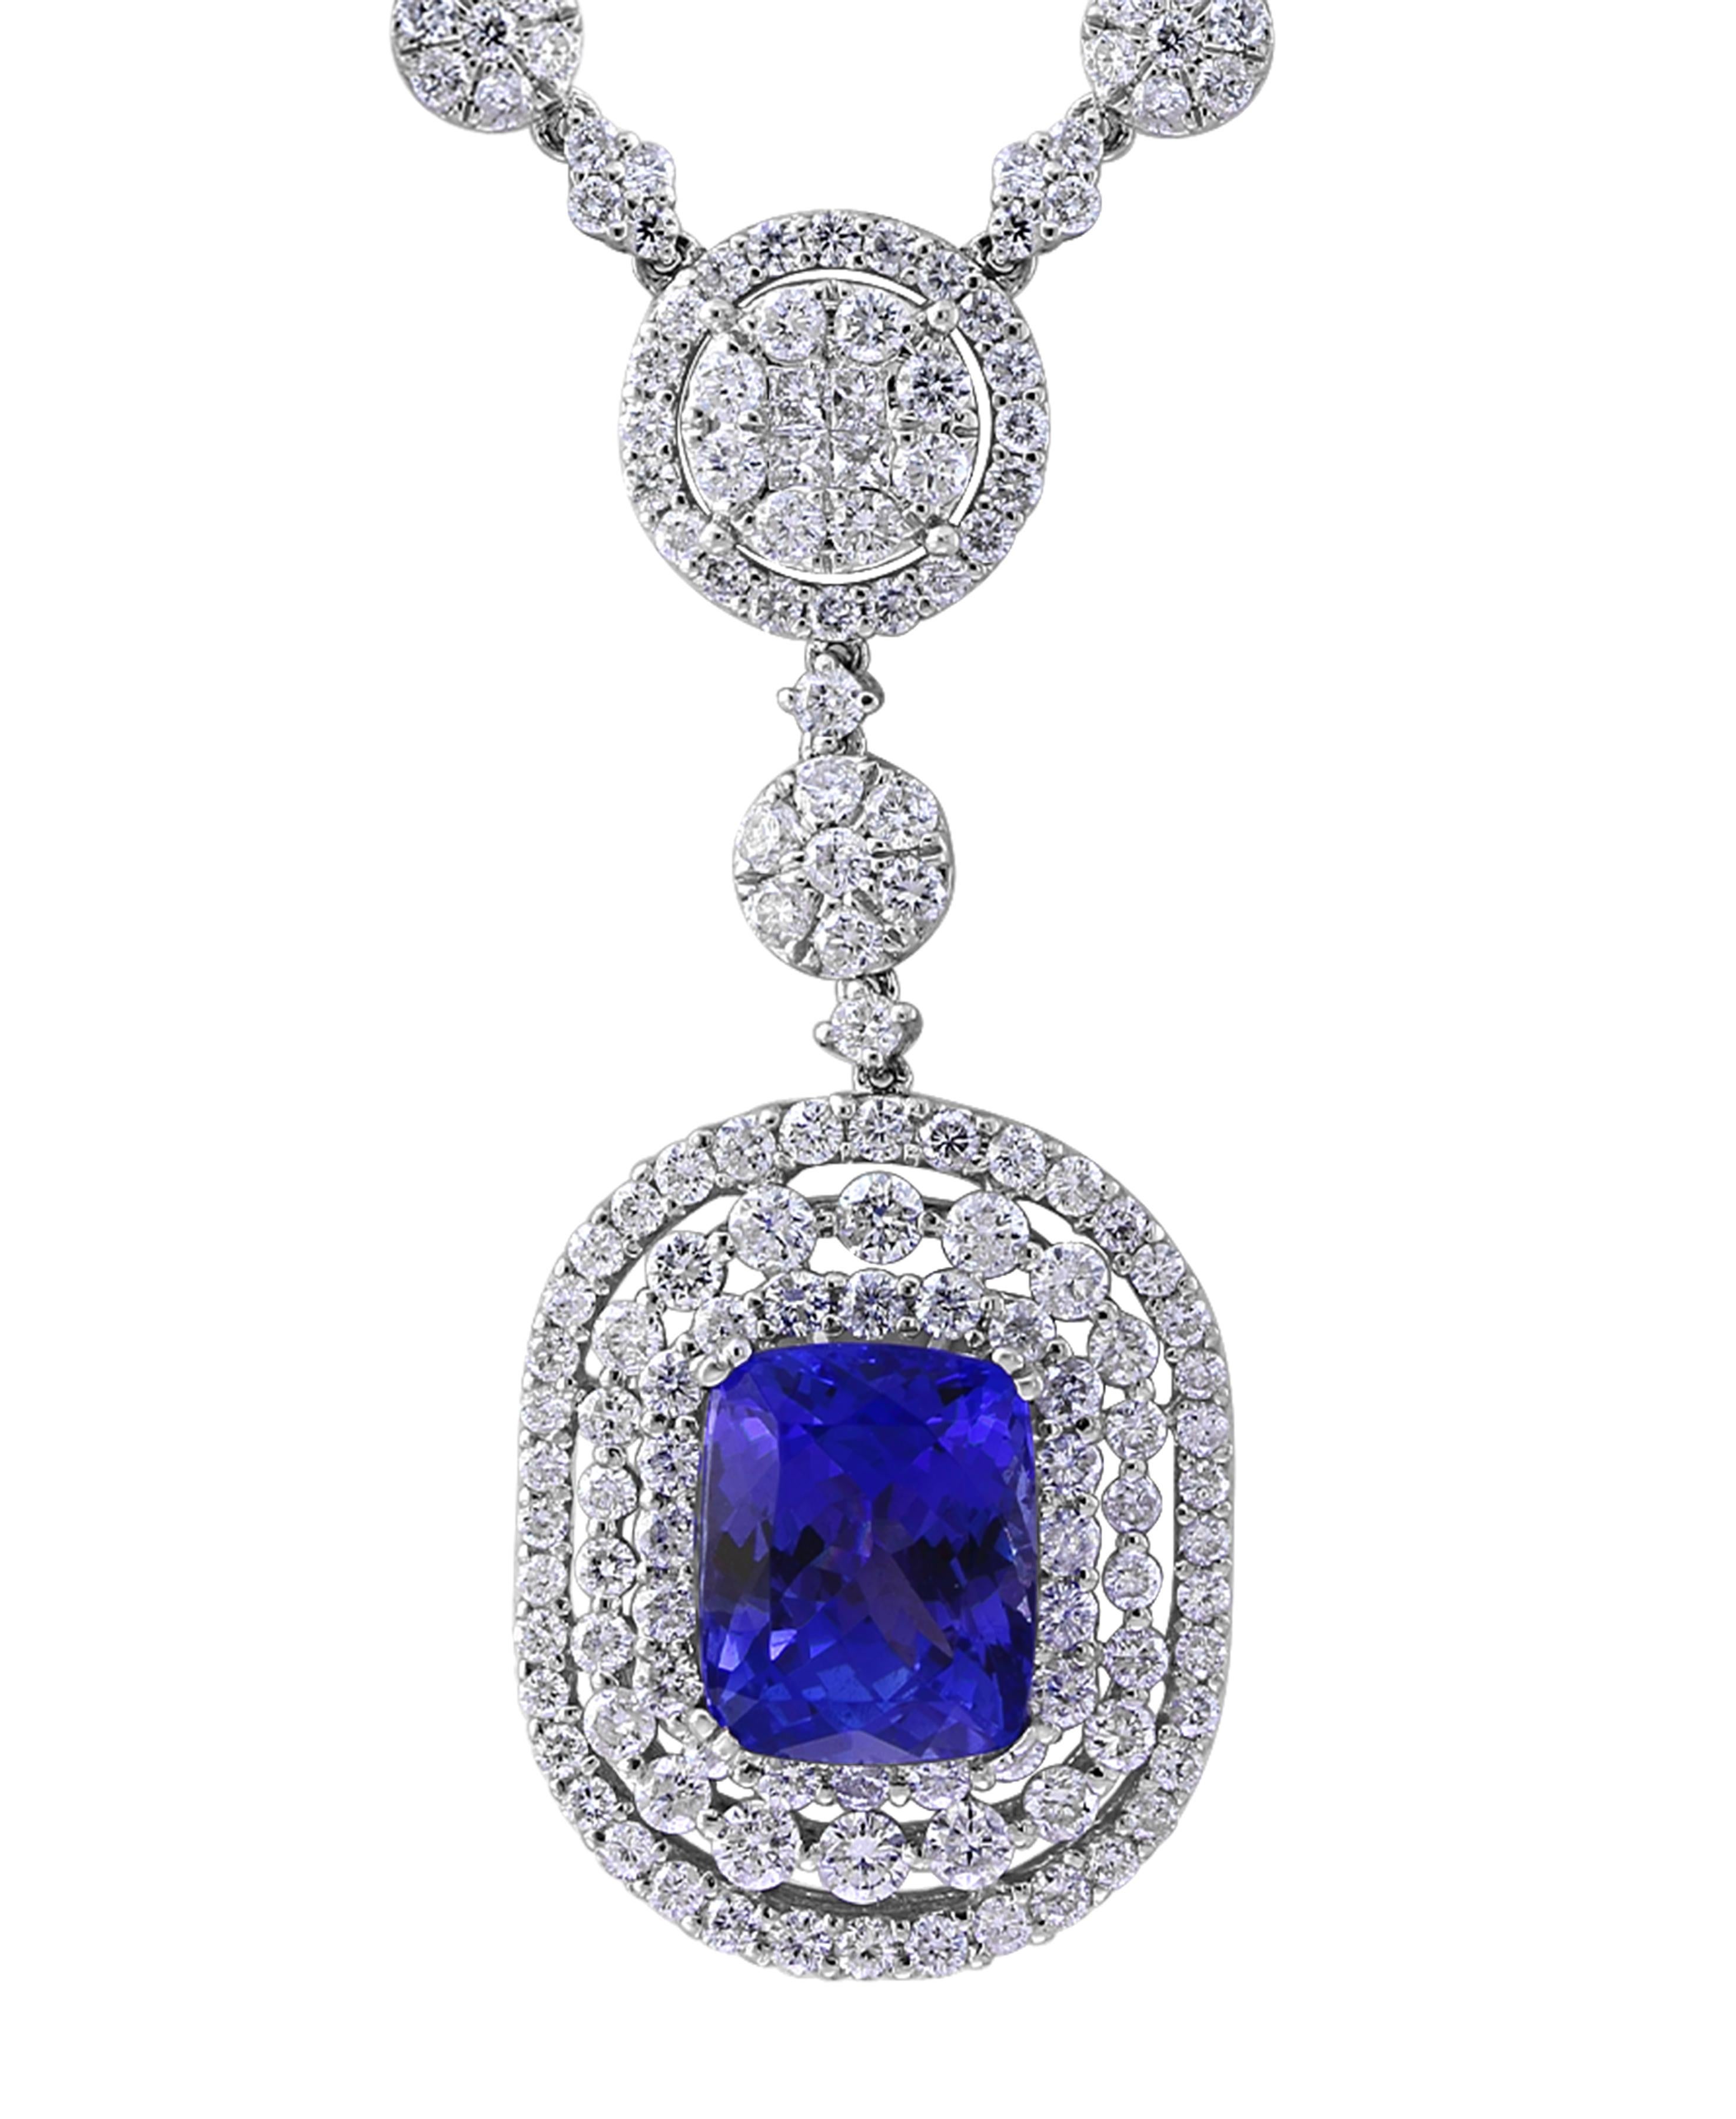 7 carat diamond necklace